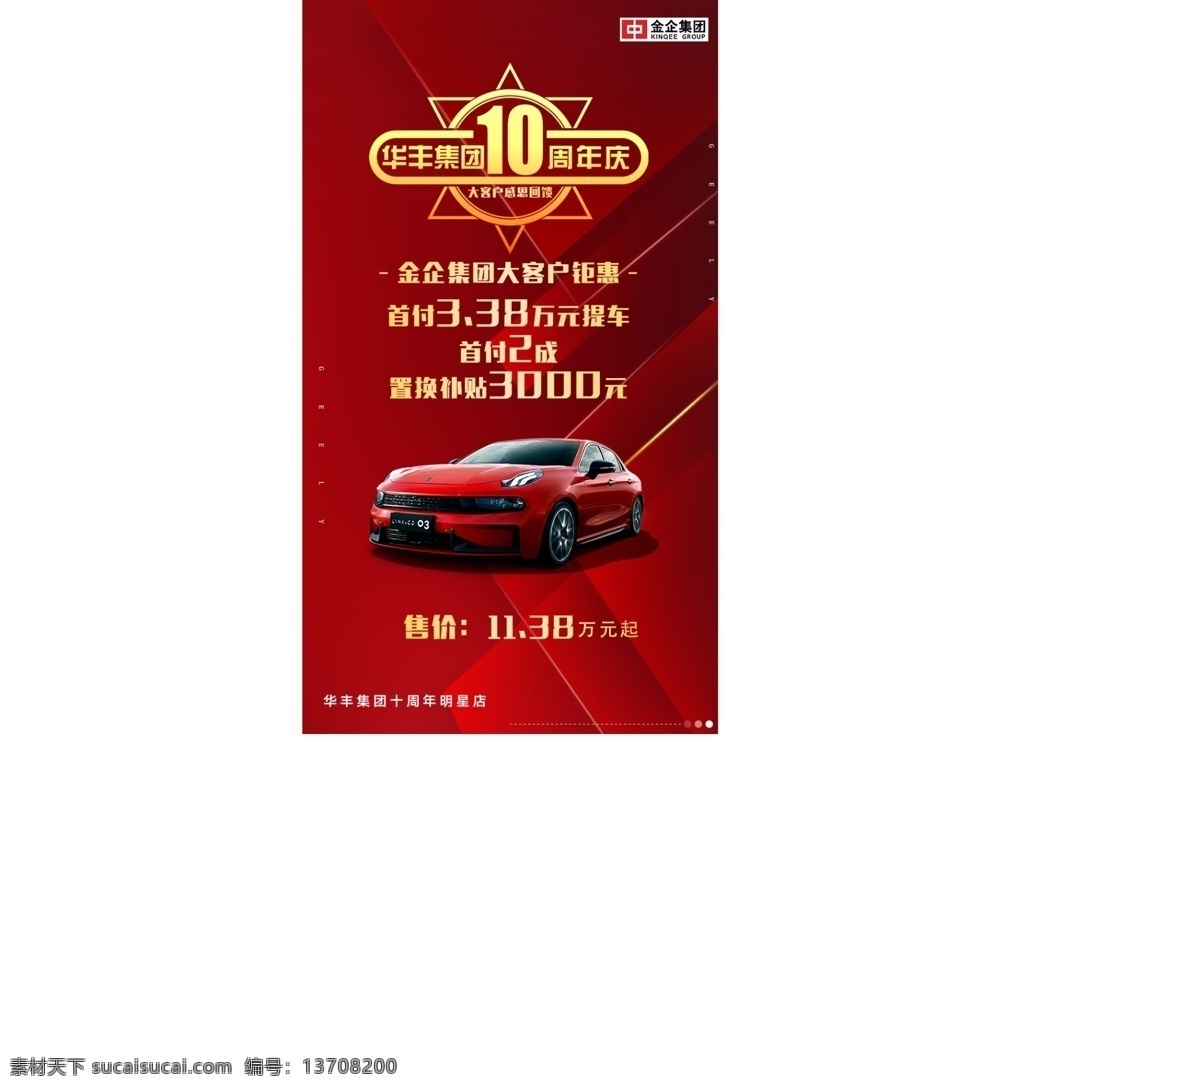 10周年庆 庆典 首付2成 红色背景 高端汽车